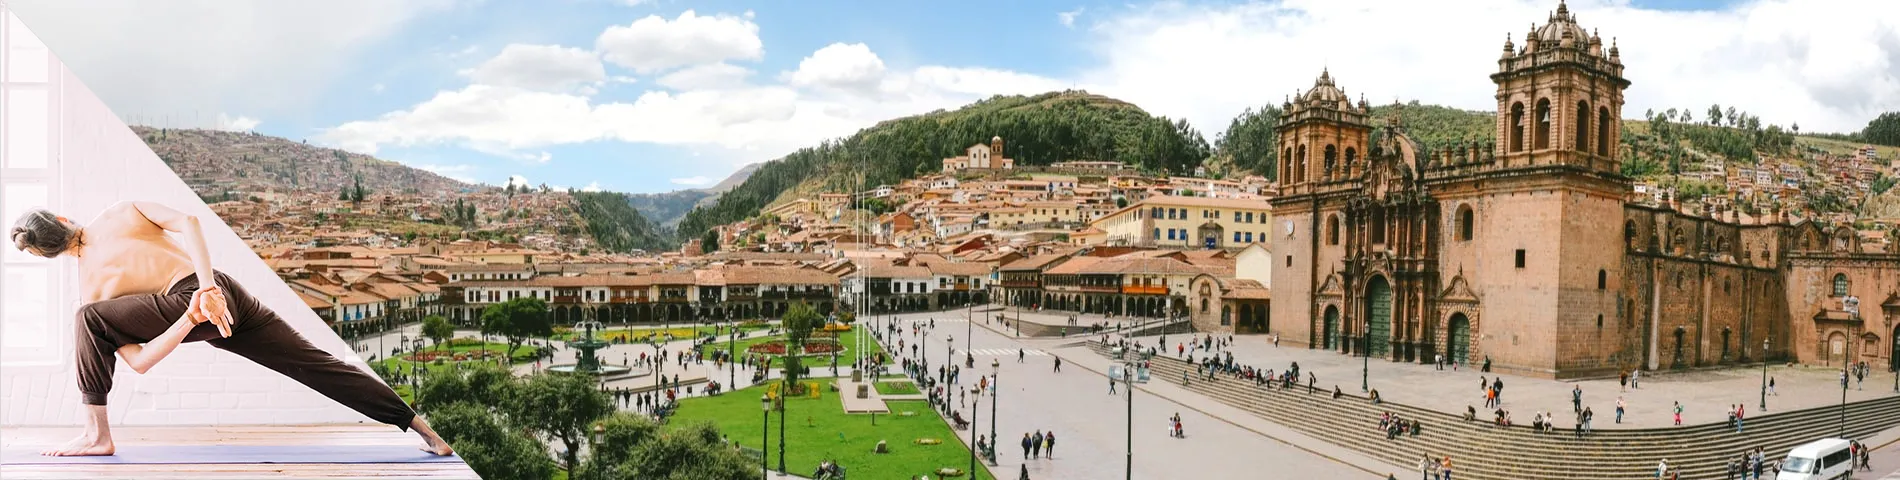 กุสโก (Cuzco) - ภาษาสเปนและโยคะ